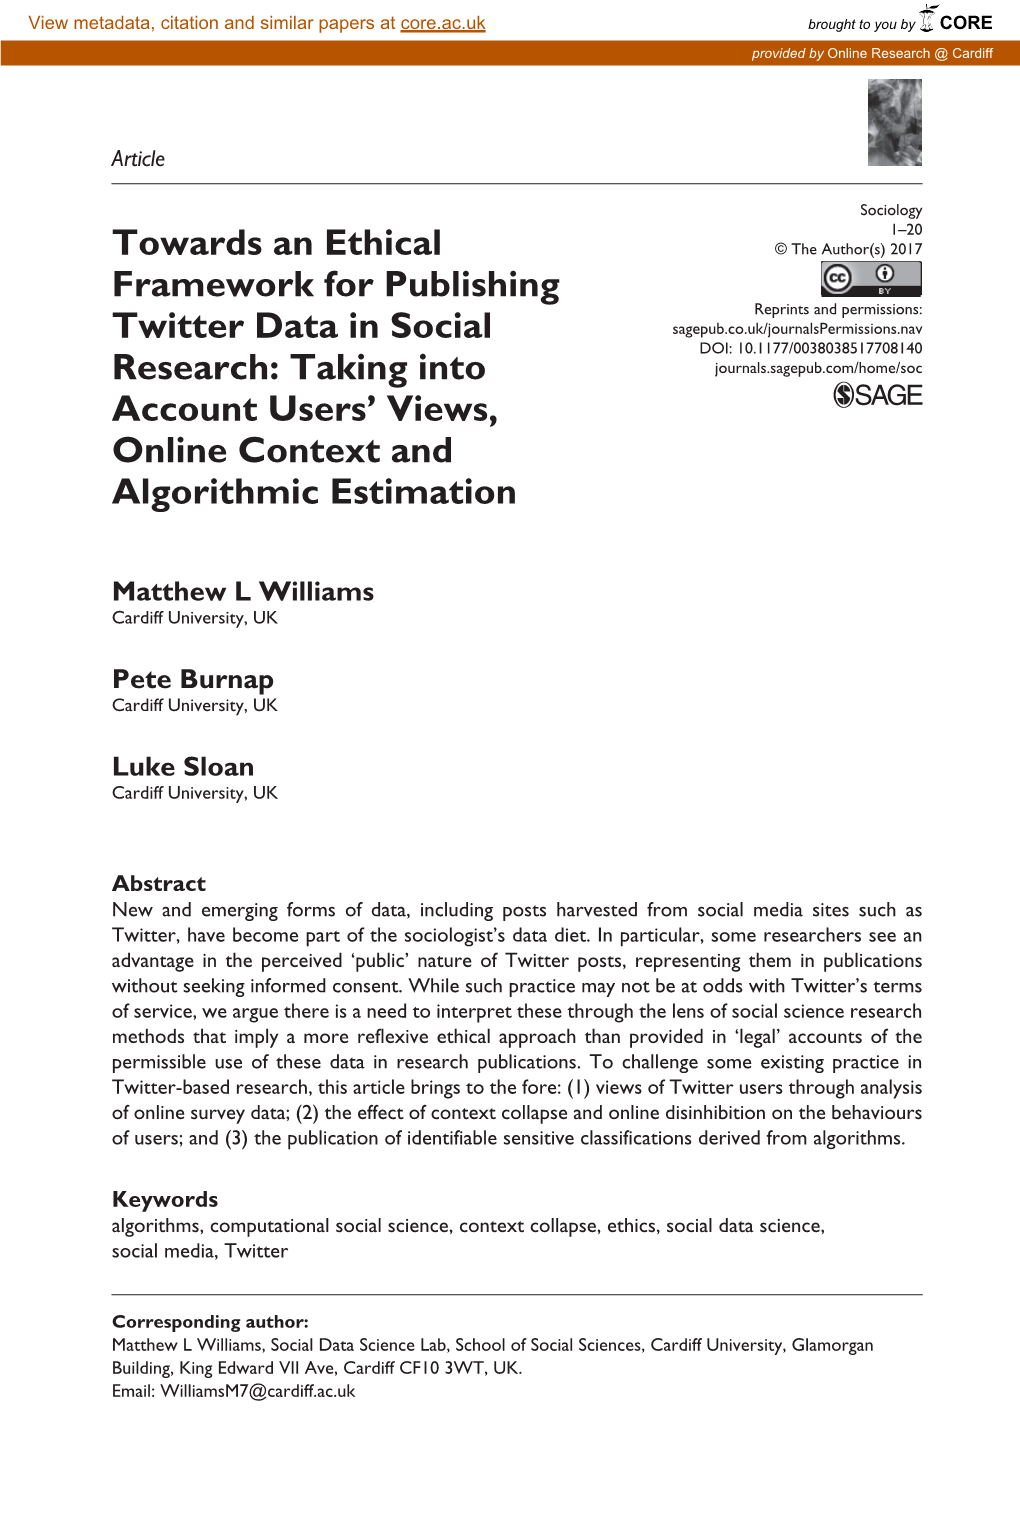 Towards an Ethical Framework for Publishing Twitter Data In